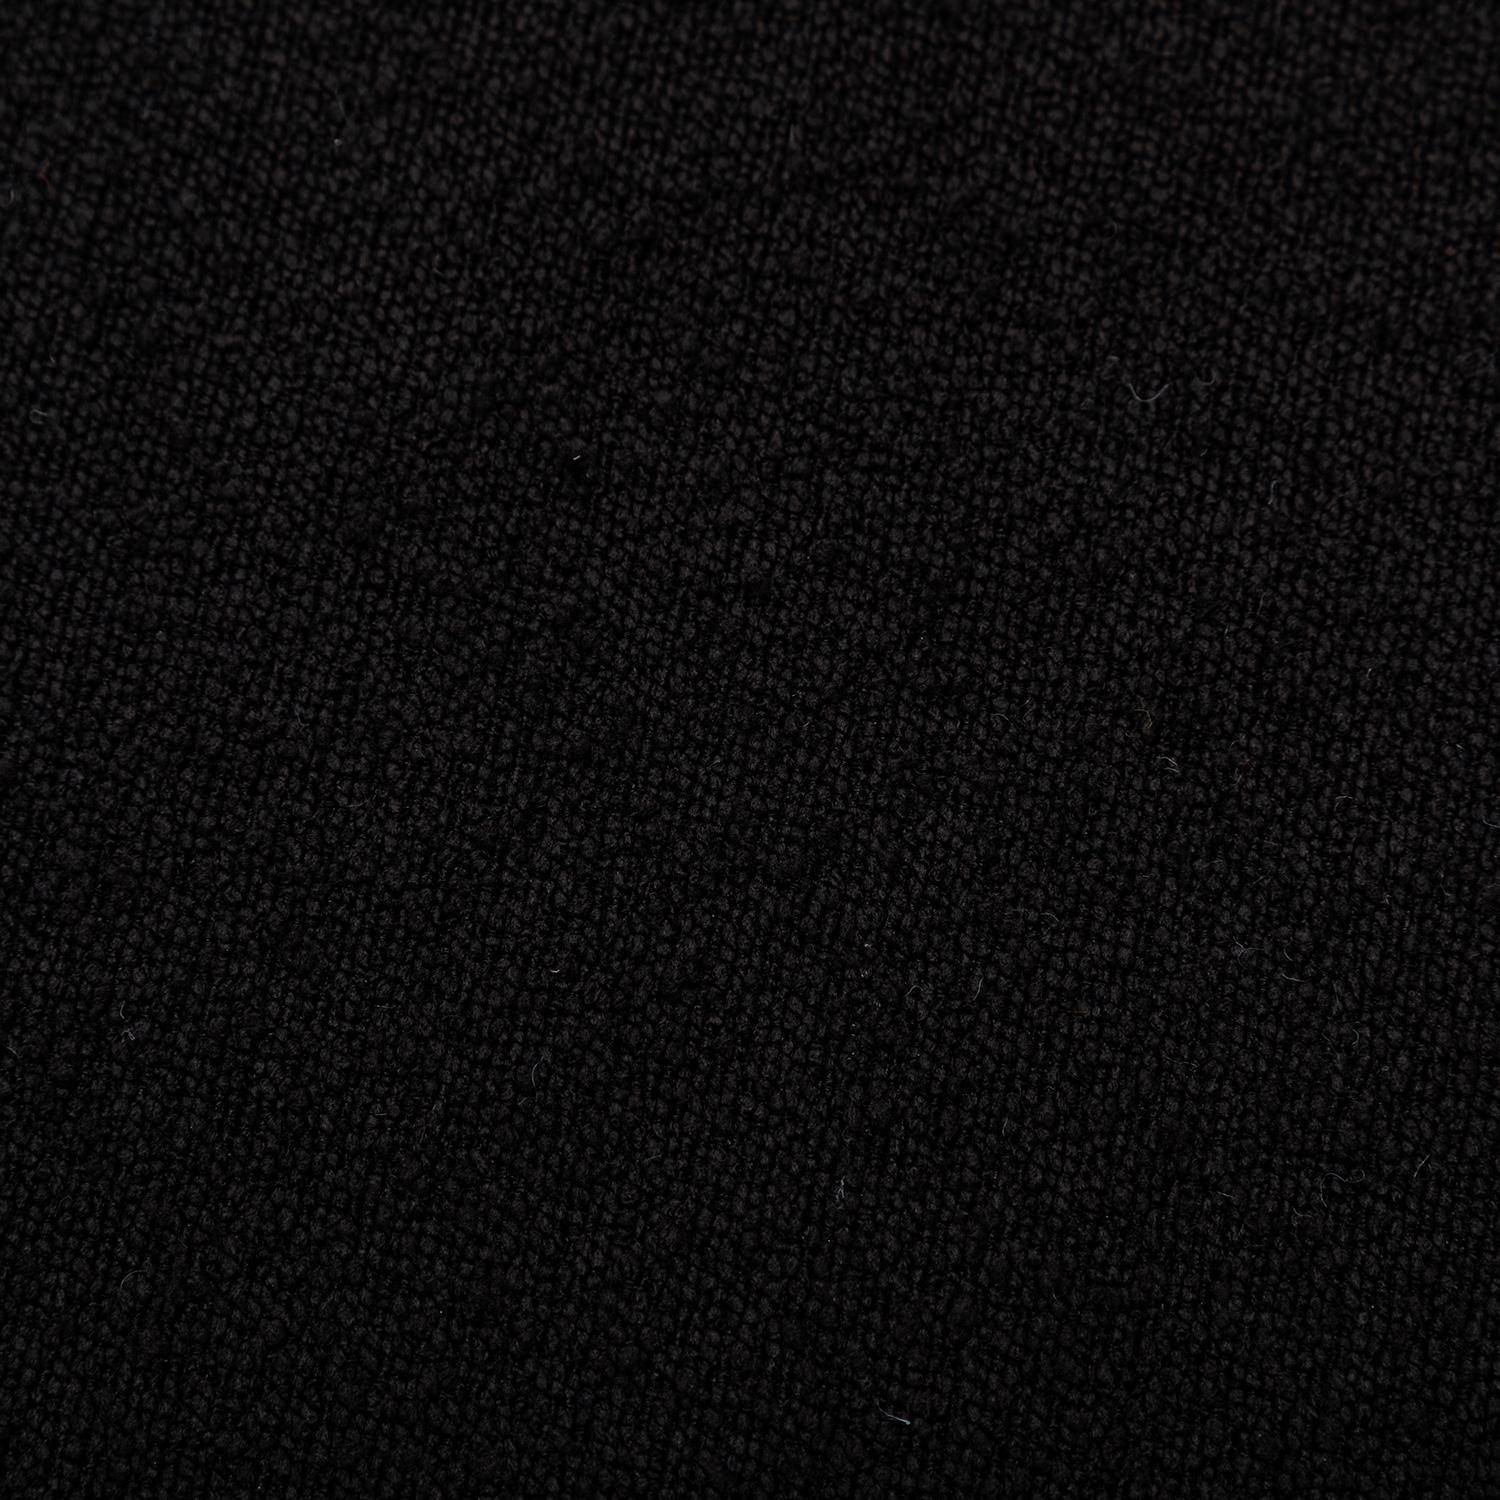 Hocker in Kieselsteinform mit schwarzem Stoffbezug, B 60 x T 44 x H 40 cm - Tao,sweeek,Photo6